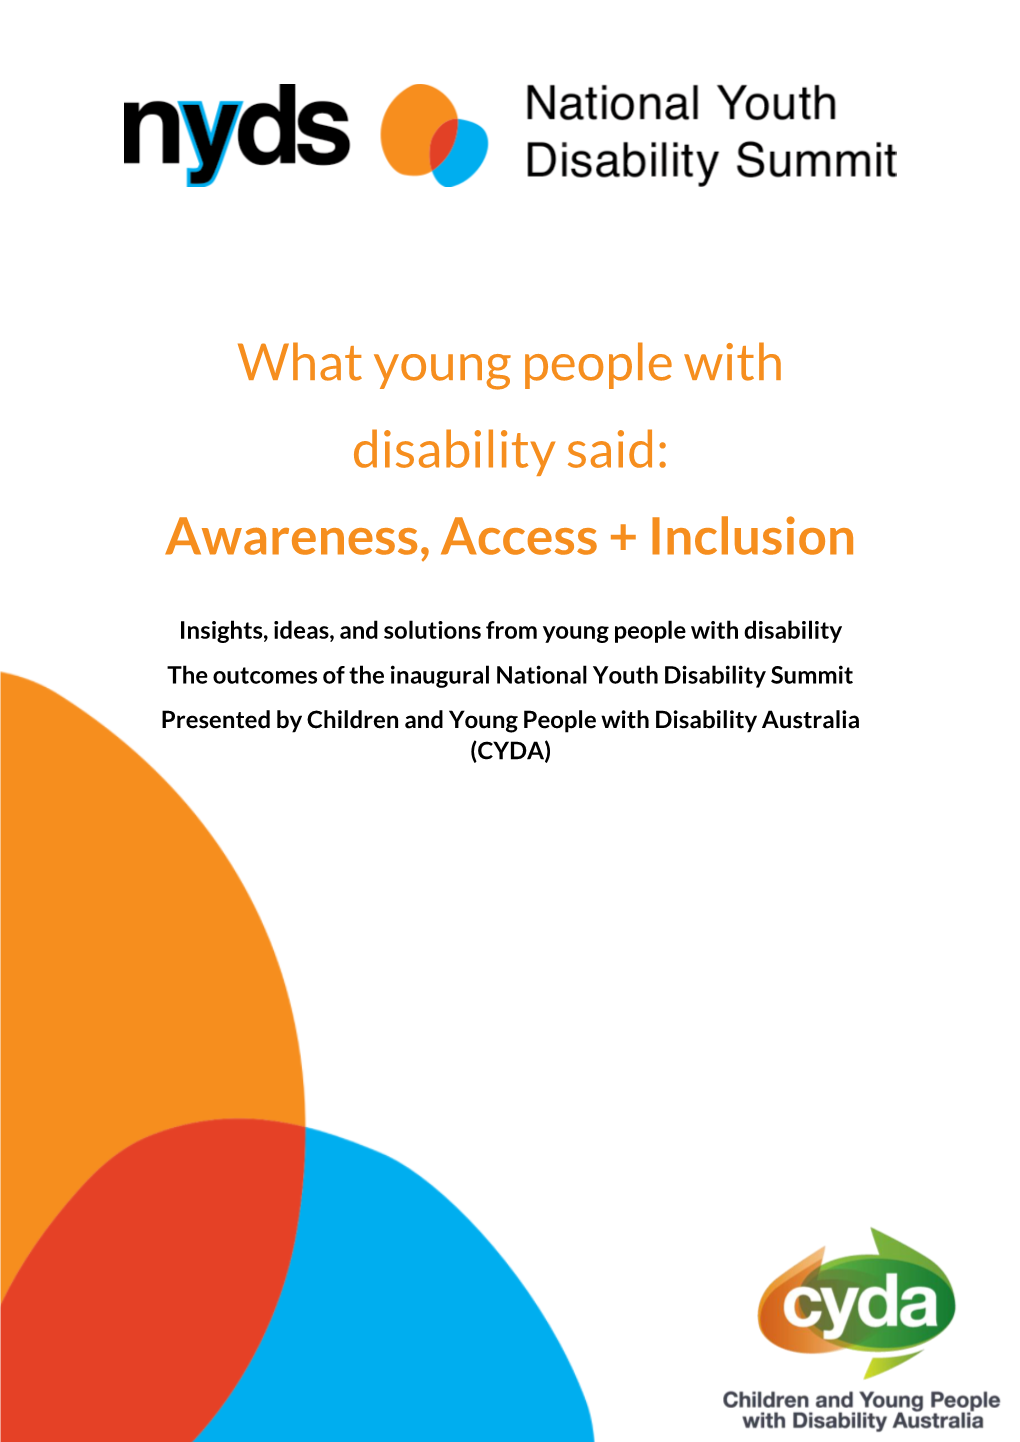 Awareness, Access + Inclusion